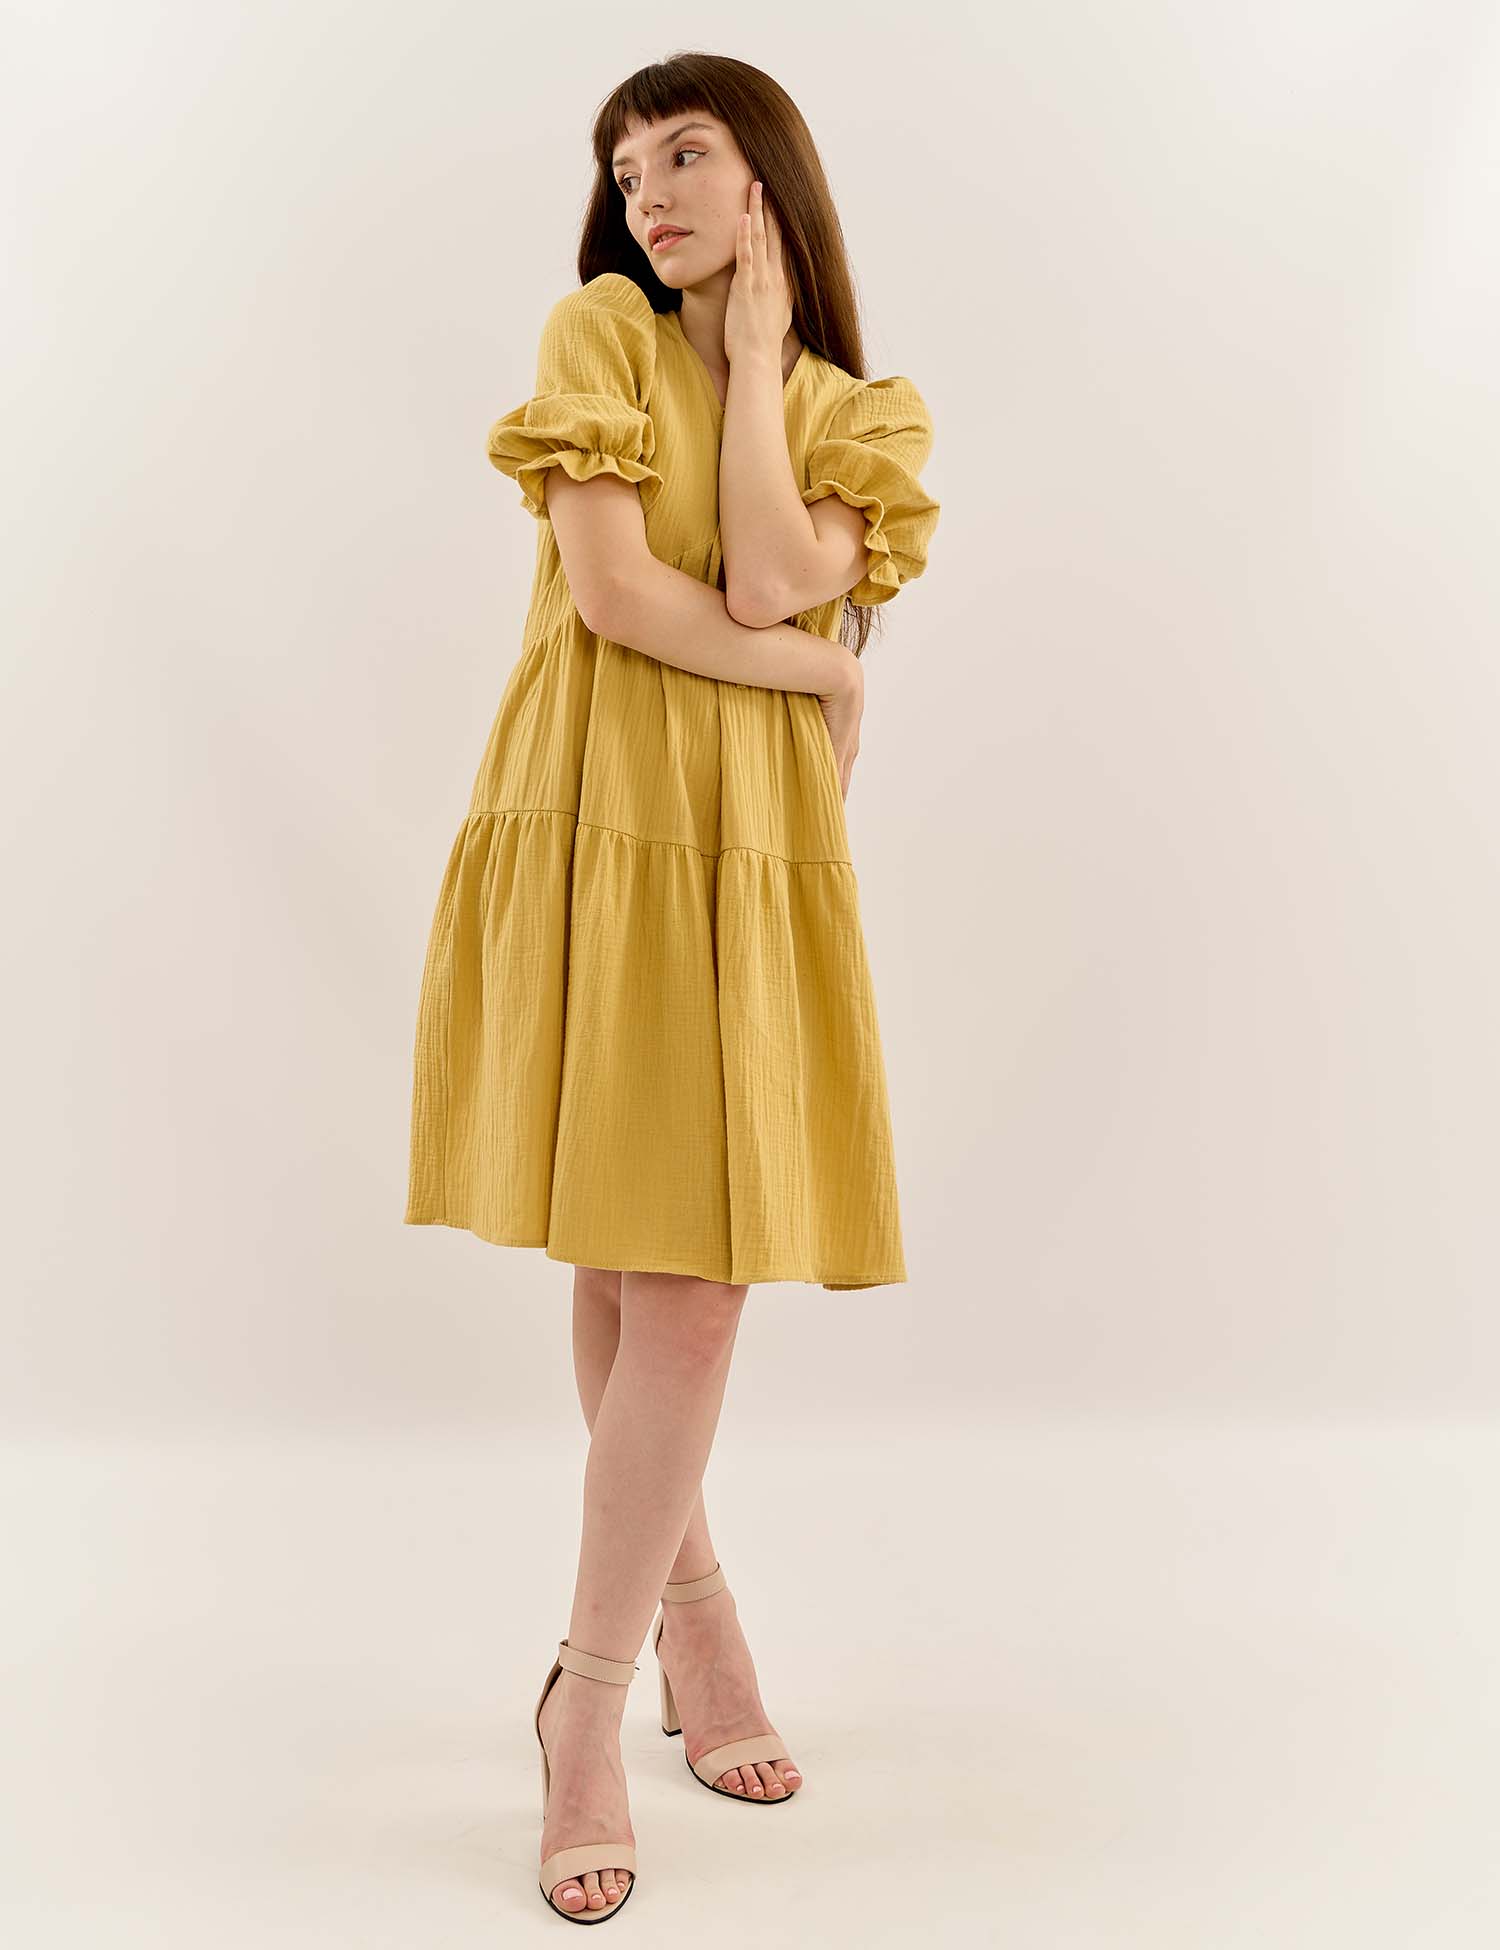 Картинка Сукня міді жовта муслинова